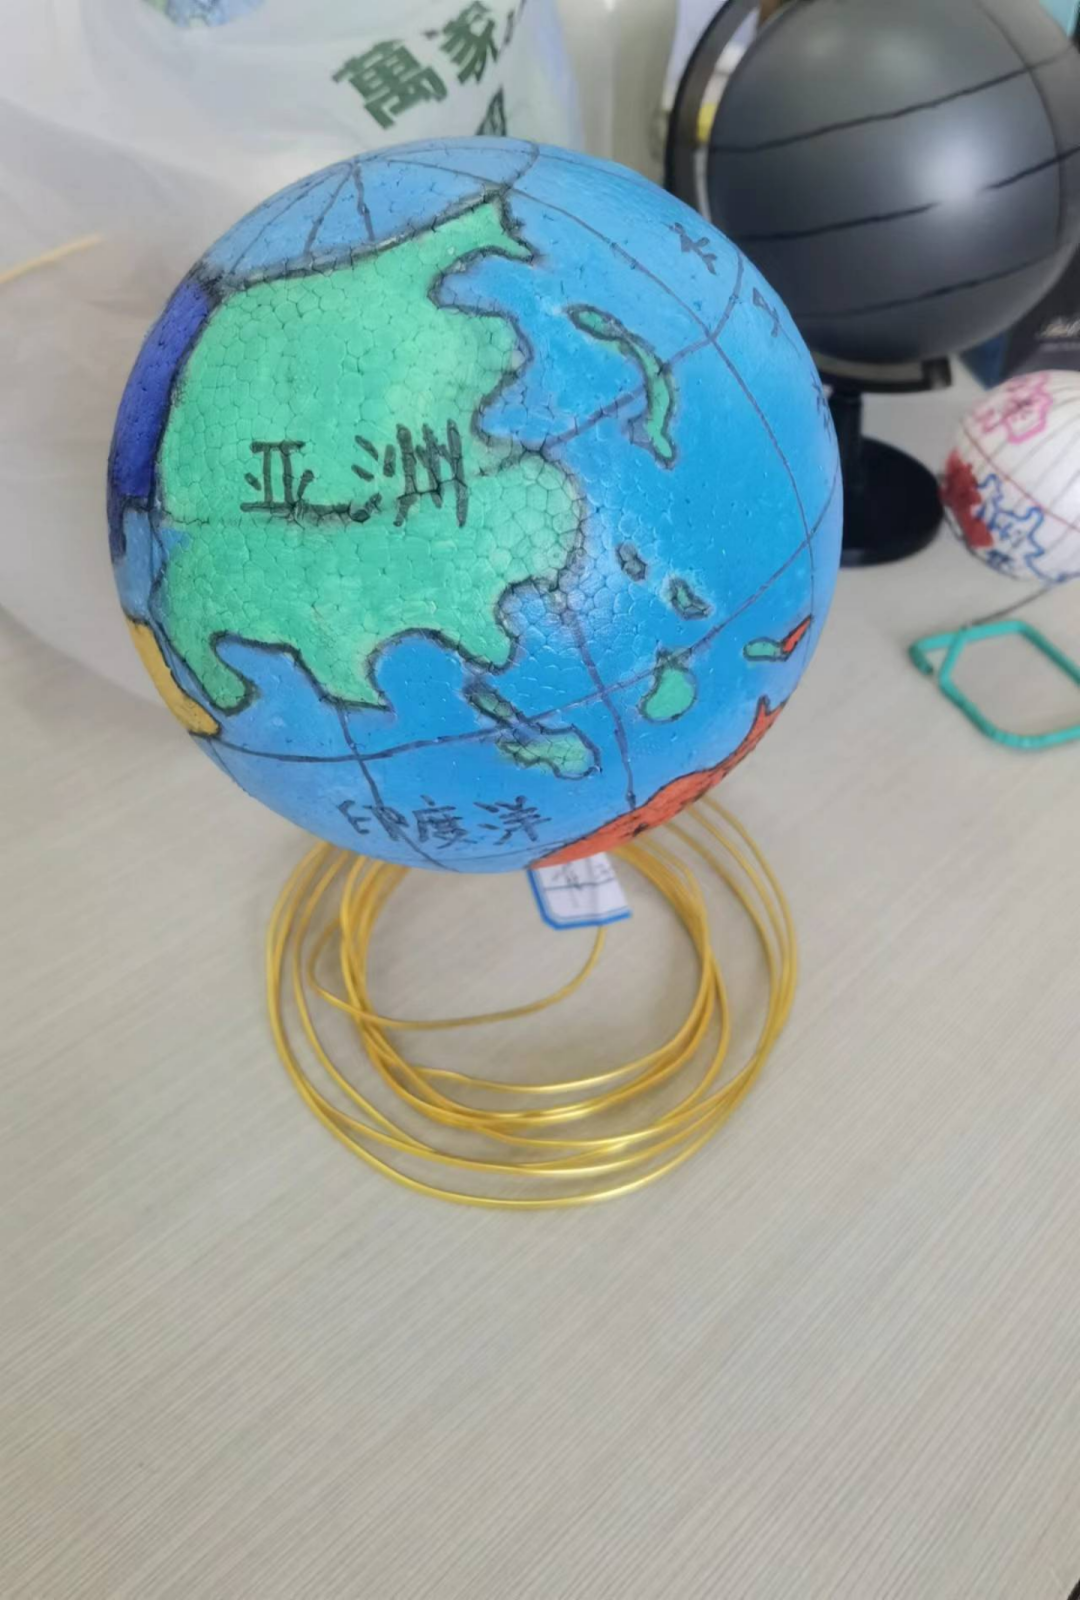 七年级地理学科实践具体测评项目是自选材质制作简易地球仪,八年级